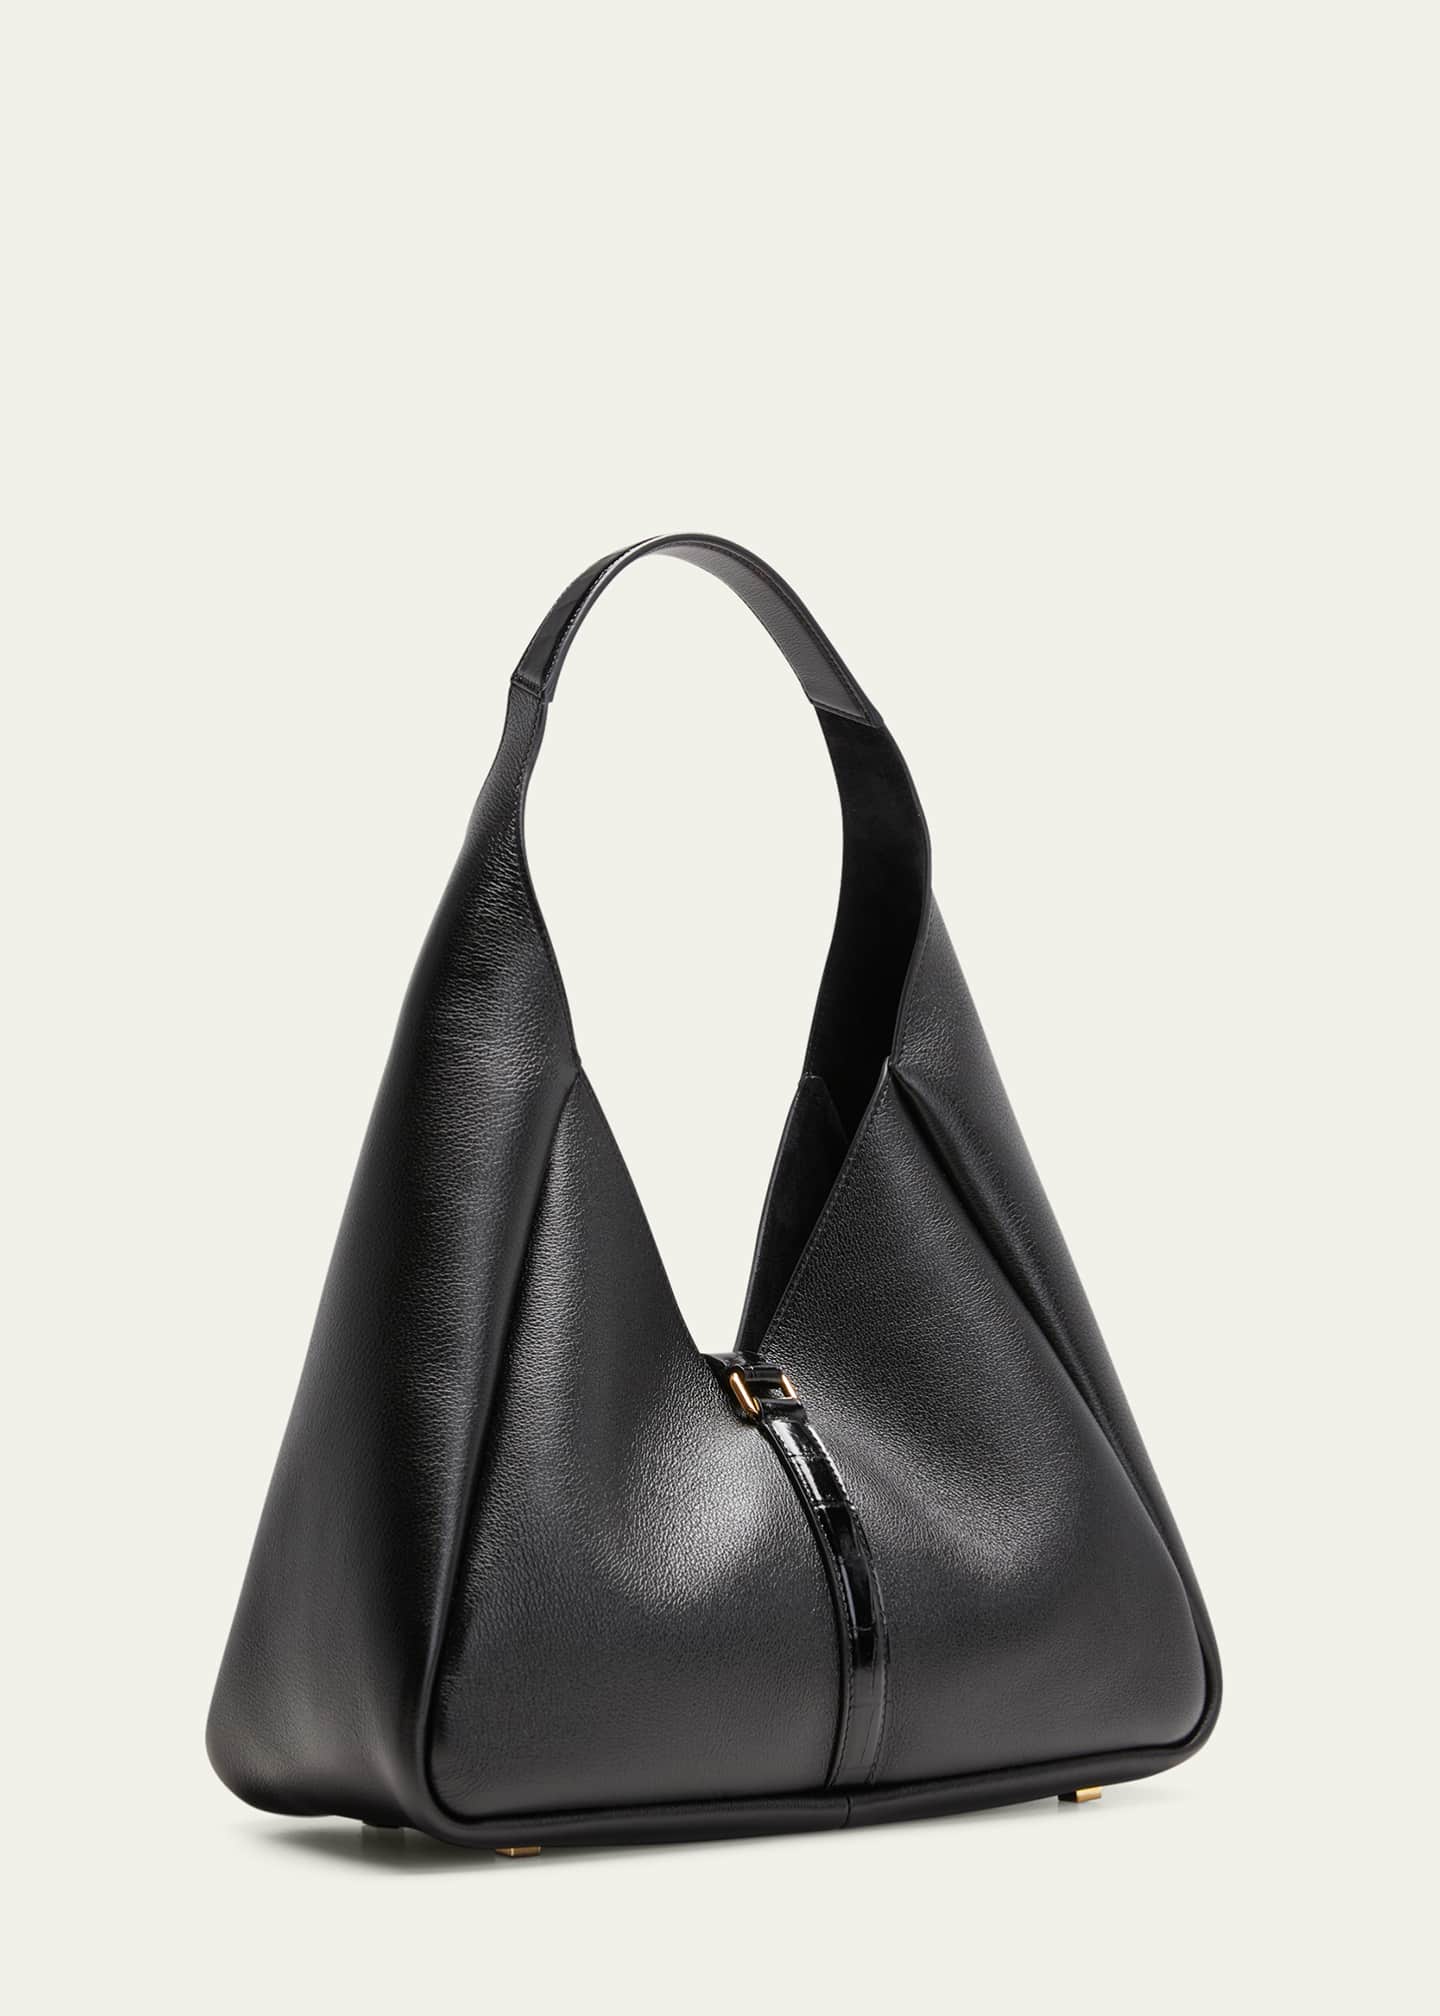 Givenchy Extra Large Hobo Shoulder Bag